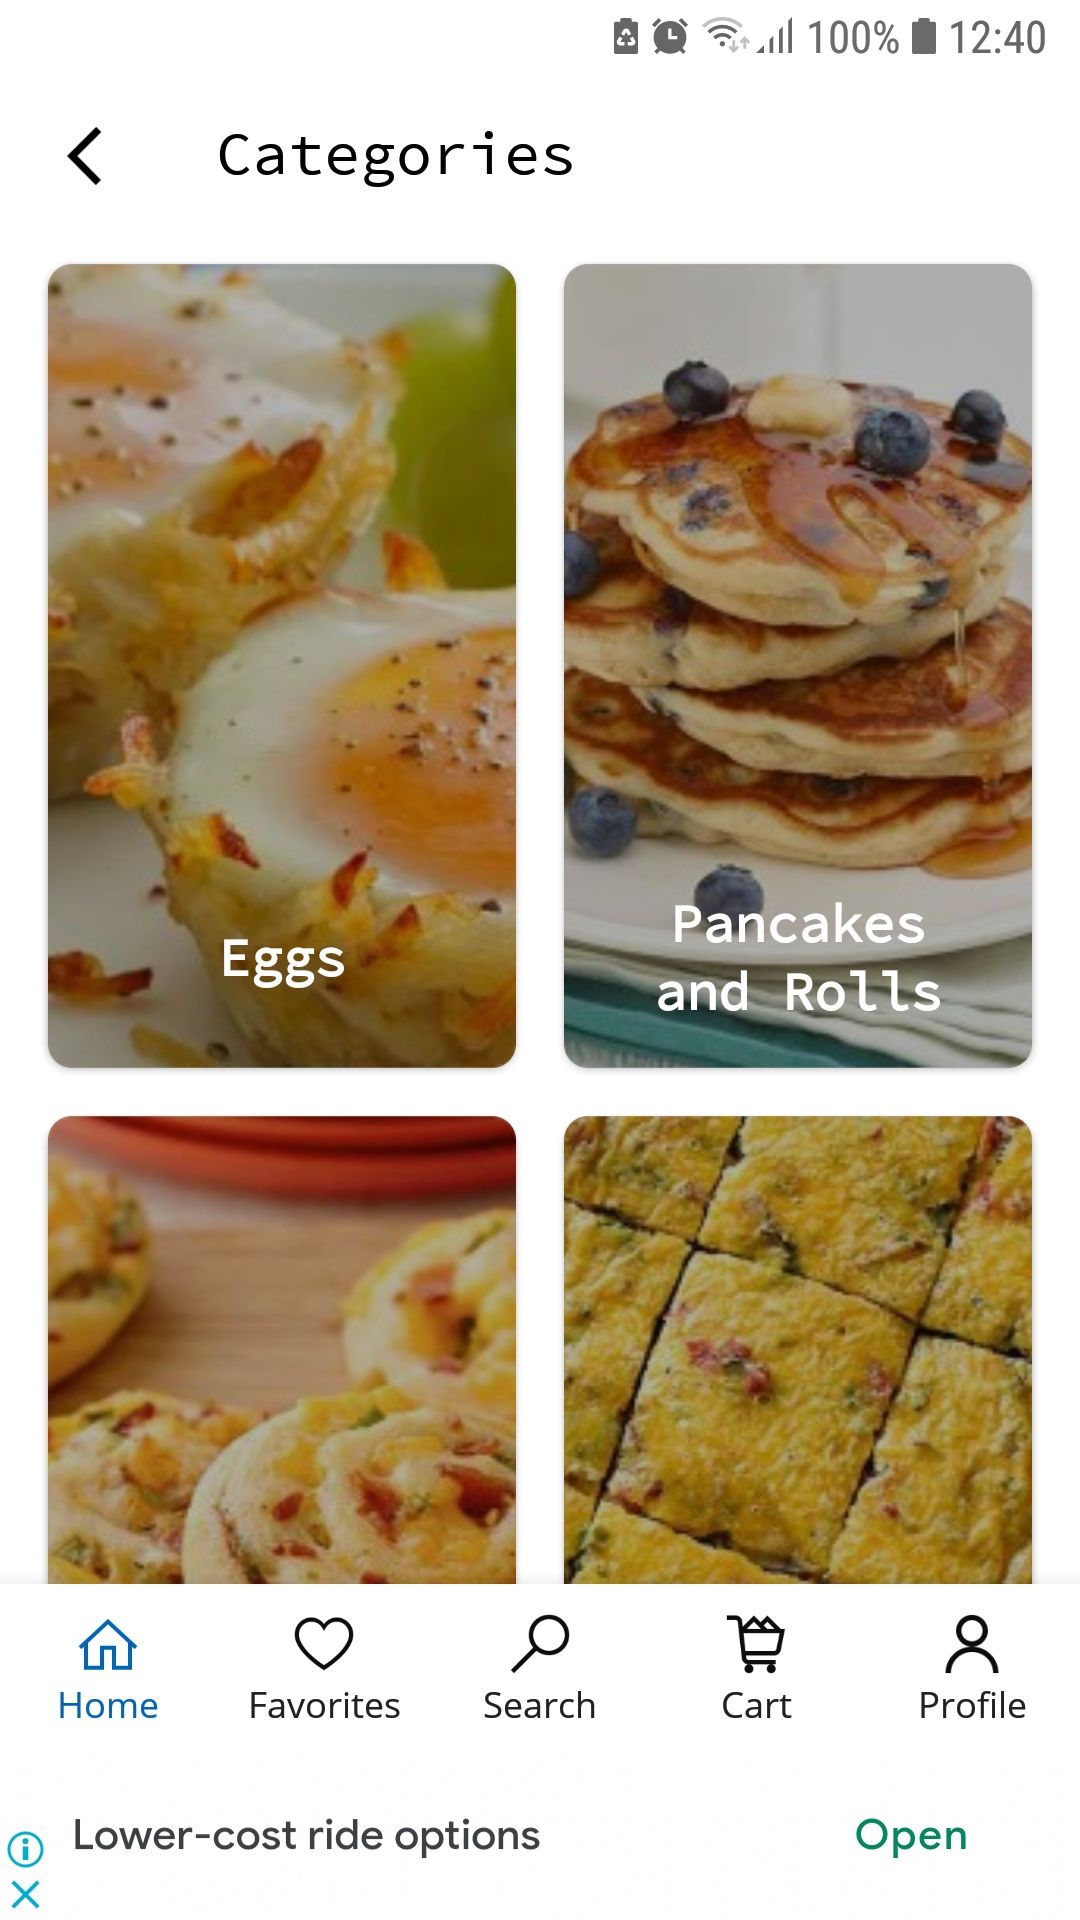 DIL Breakfast Recipes mobile breakfast recipe app categories